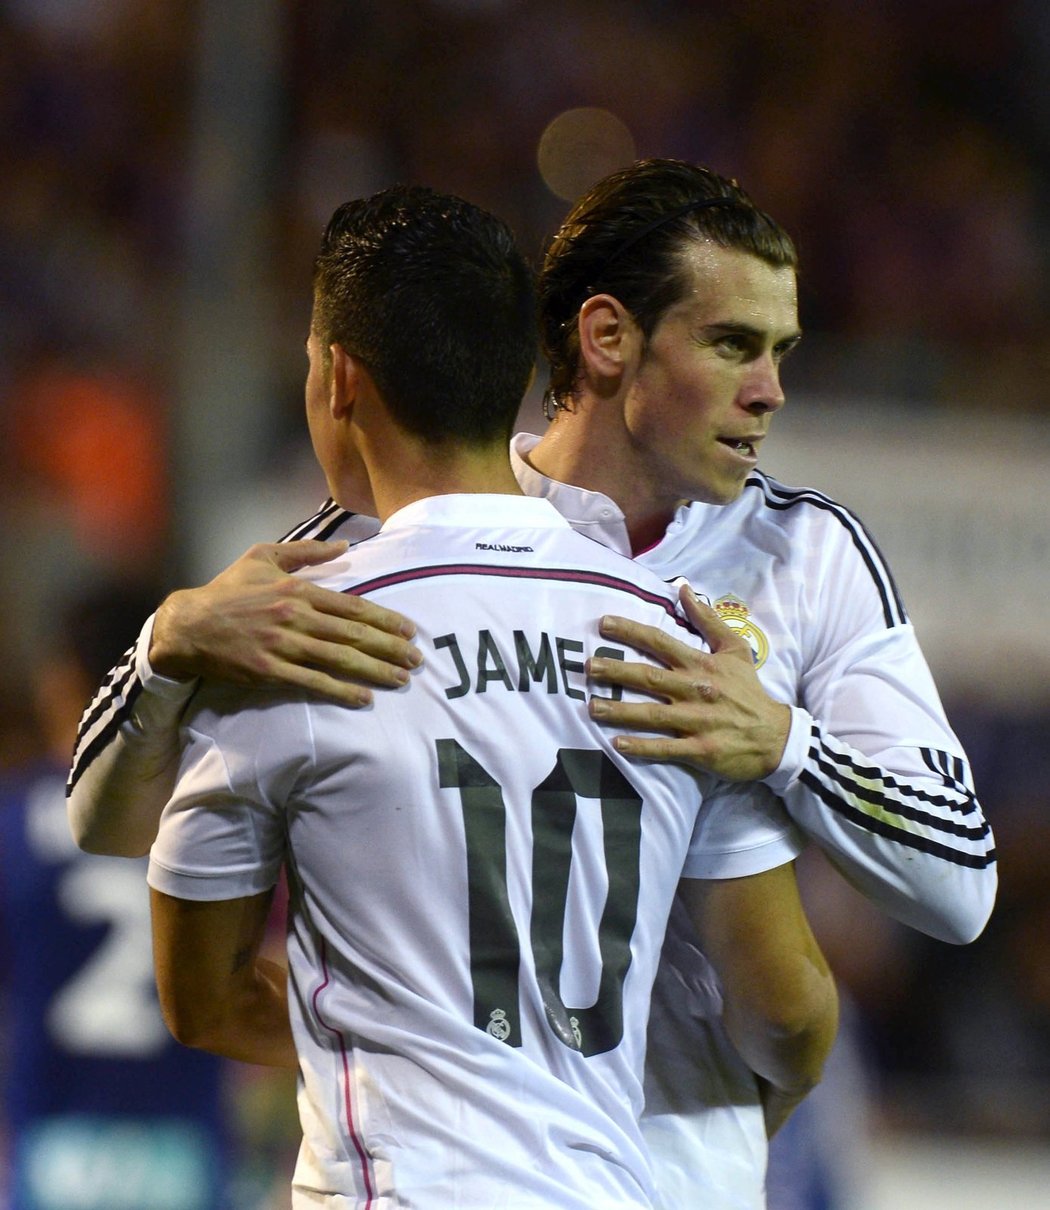 Výhru Realu Madrid na půdě Eibaru ve španělské lize pomohl zařídit i střelec James.